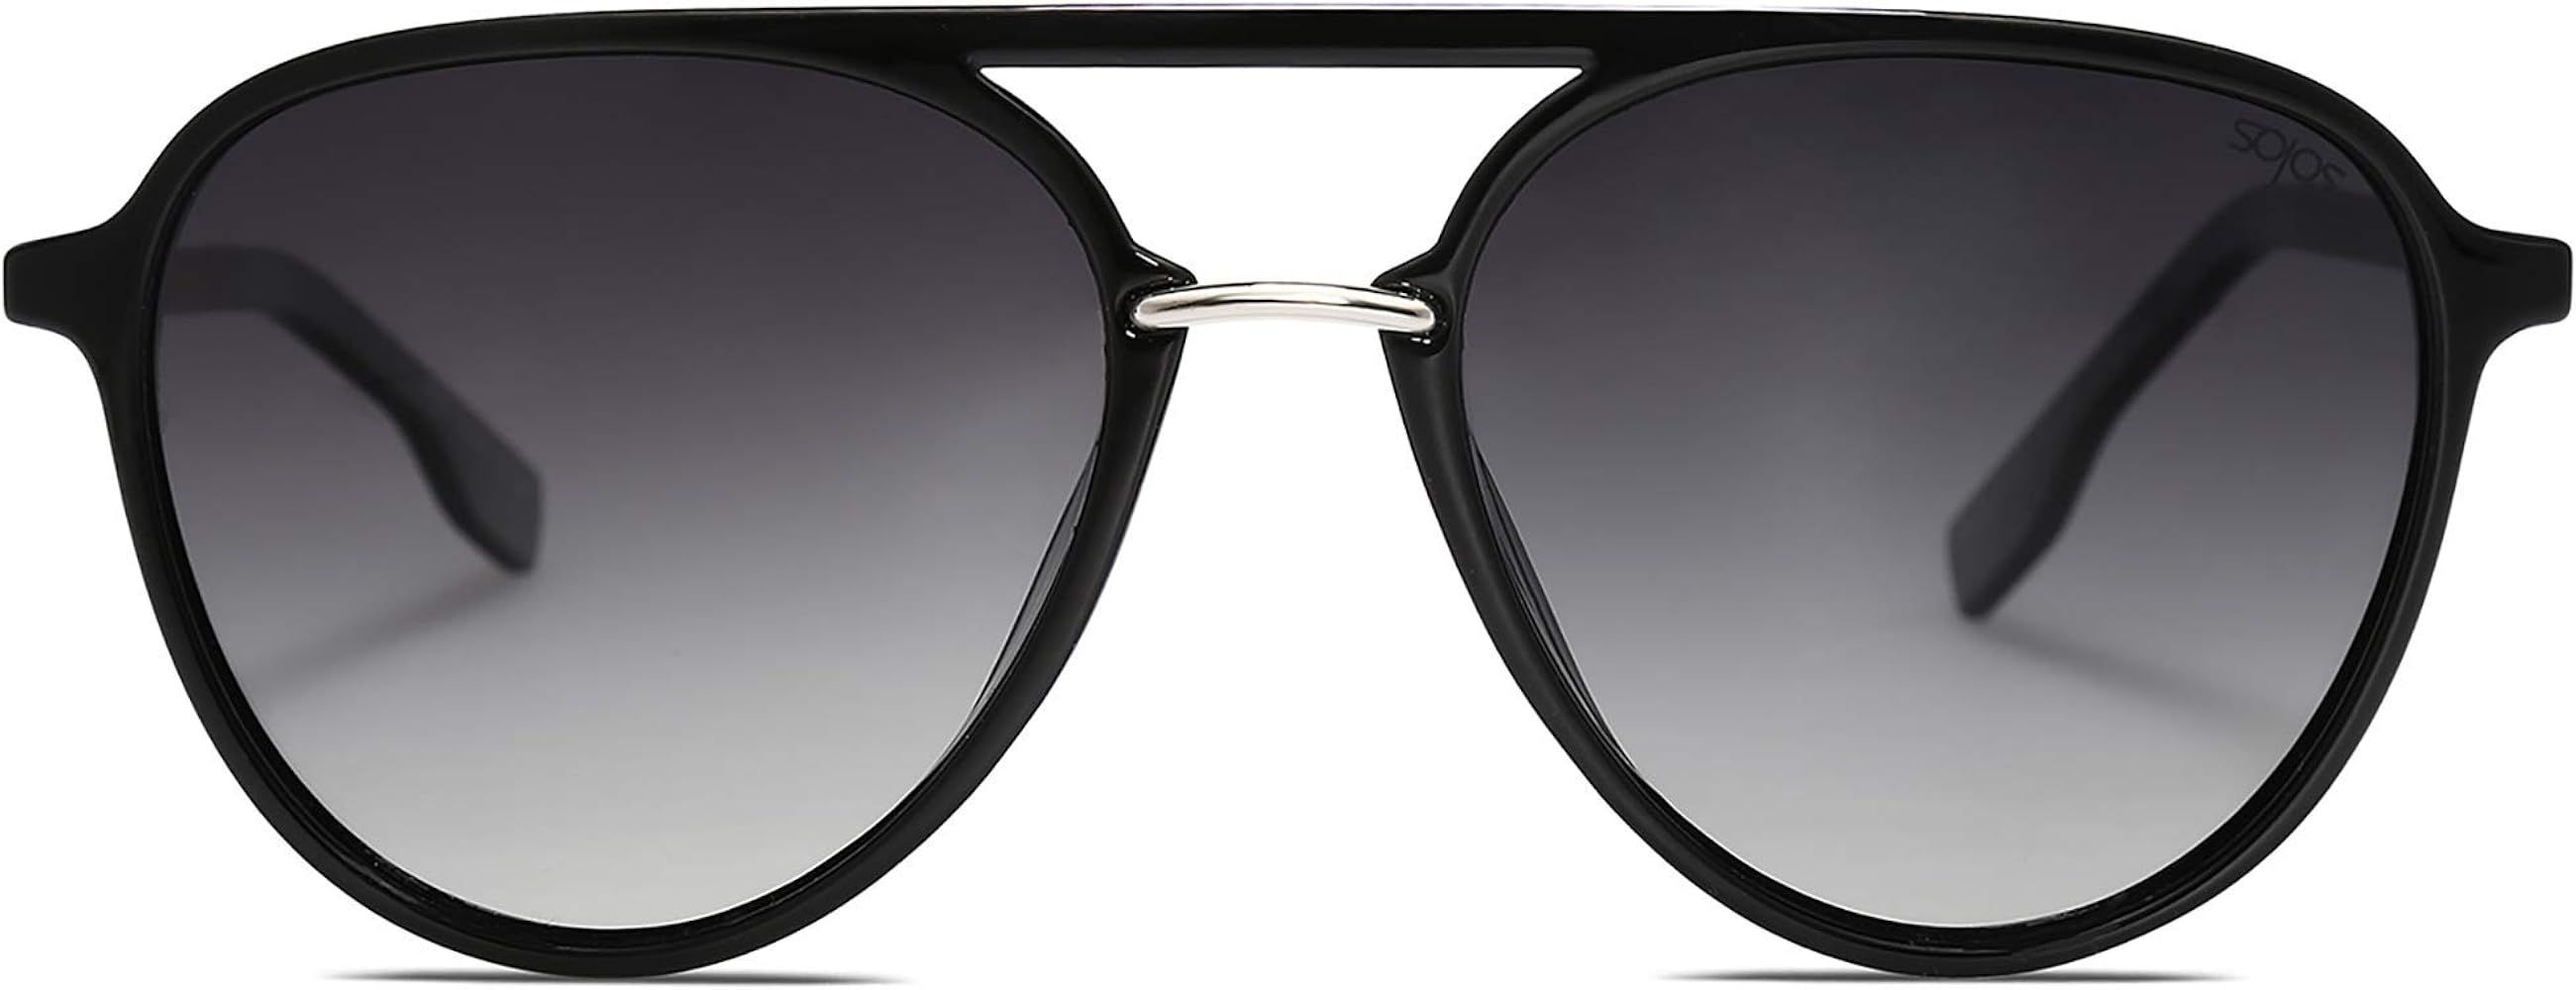 SOJOS Oversized Polarized Sunglasses for Women Men Aviator Ladies Shades Large Frame SJ2078 | Amazon (US)